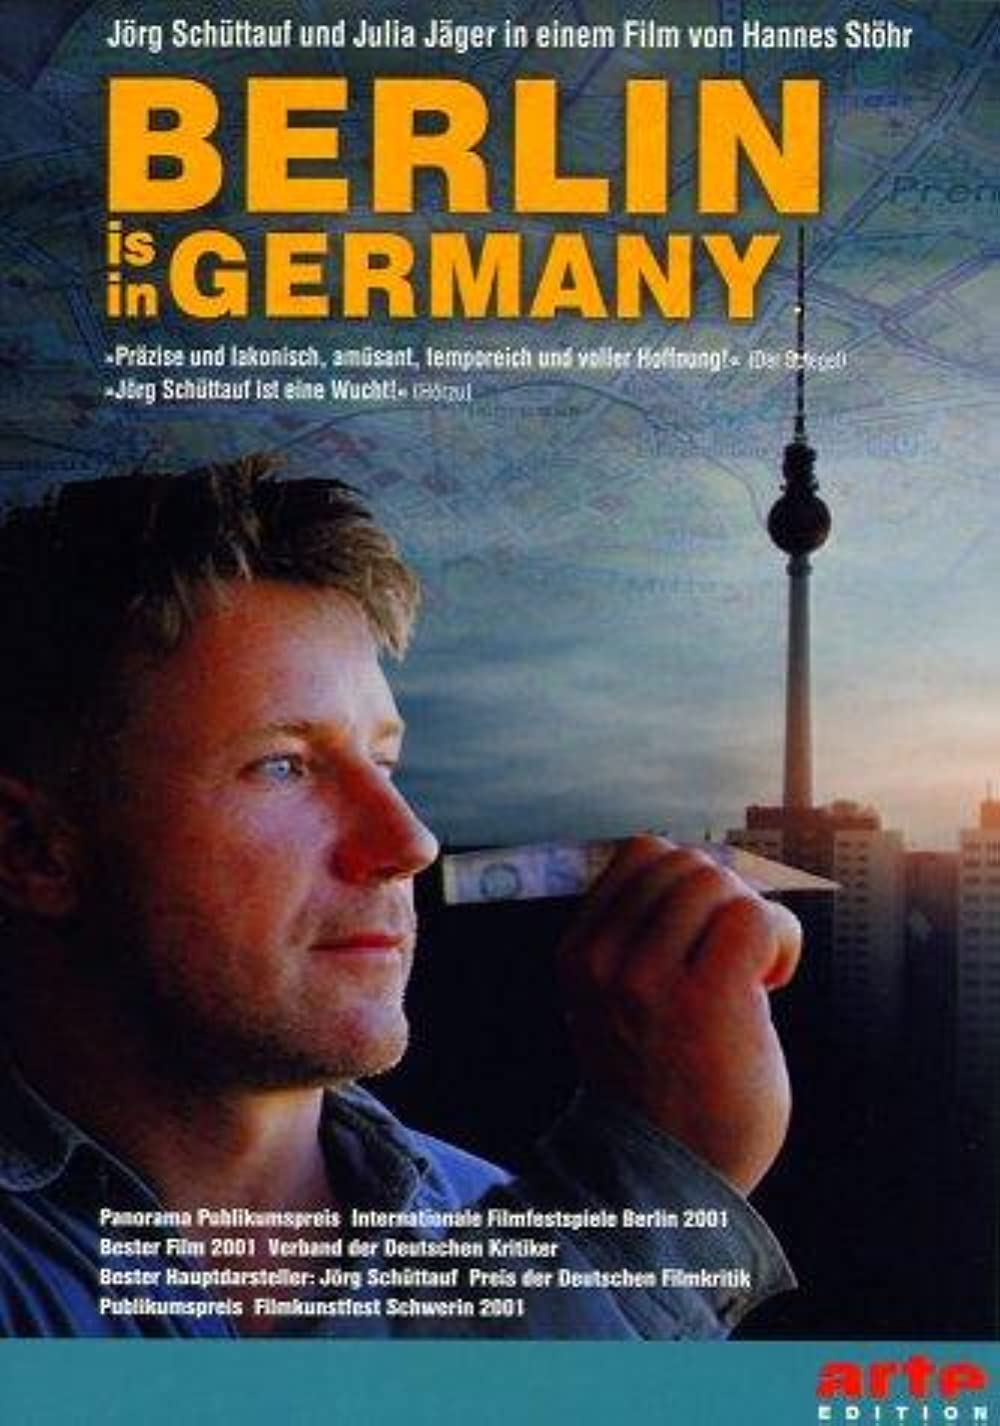 Filmbeschreibung zu Berlin is in Germany